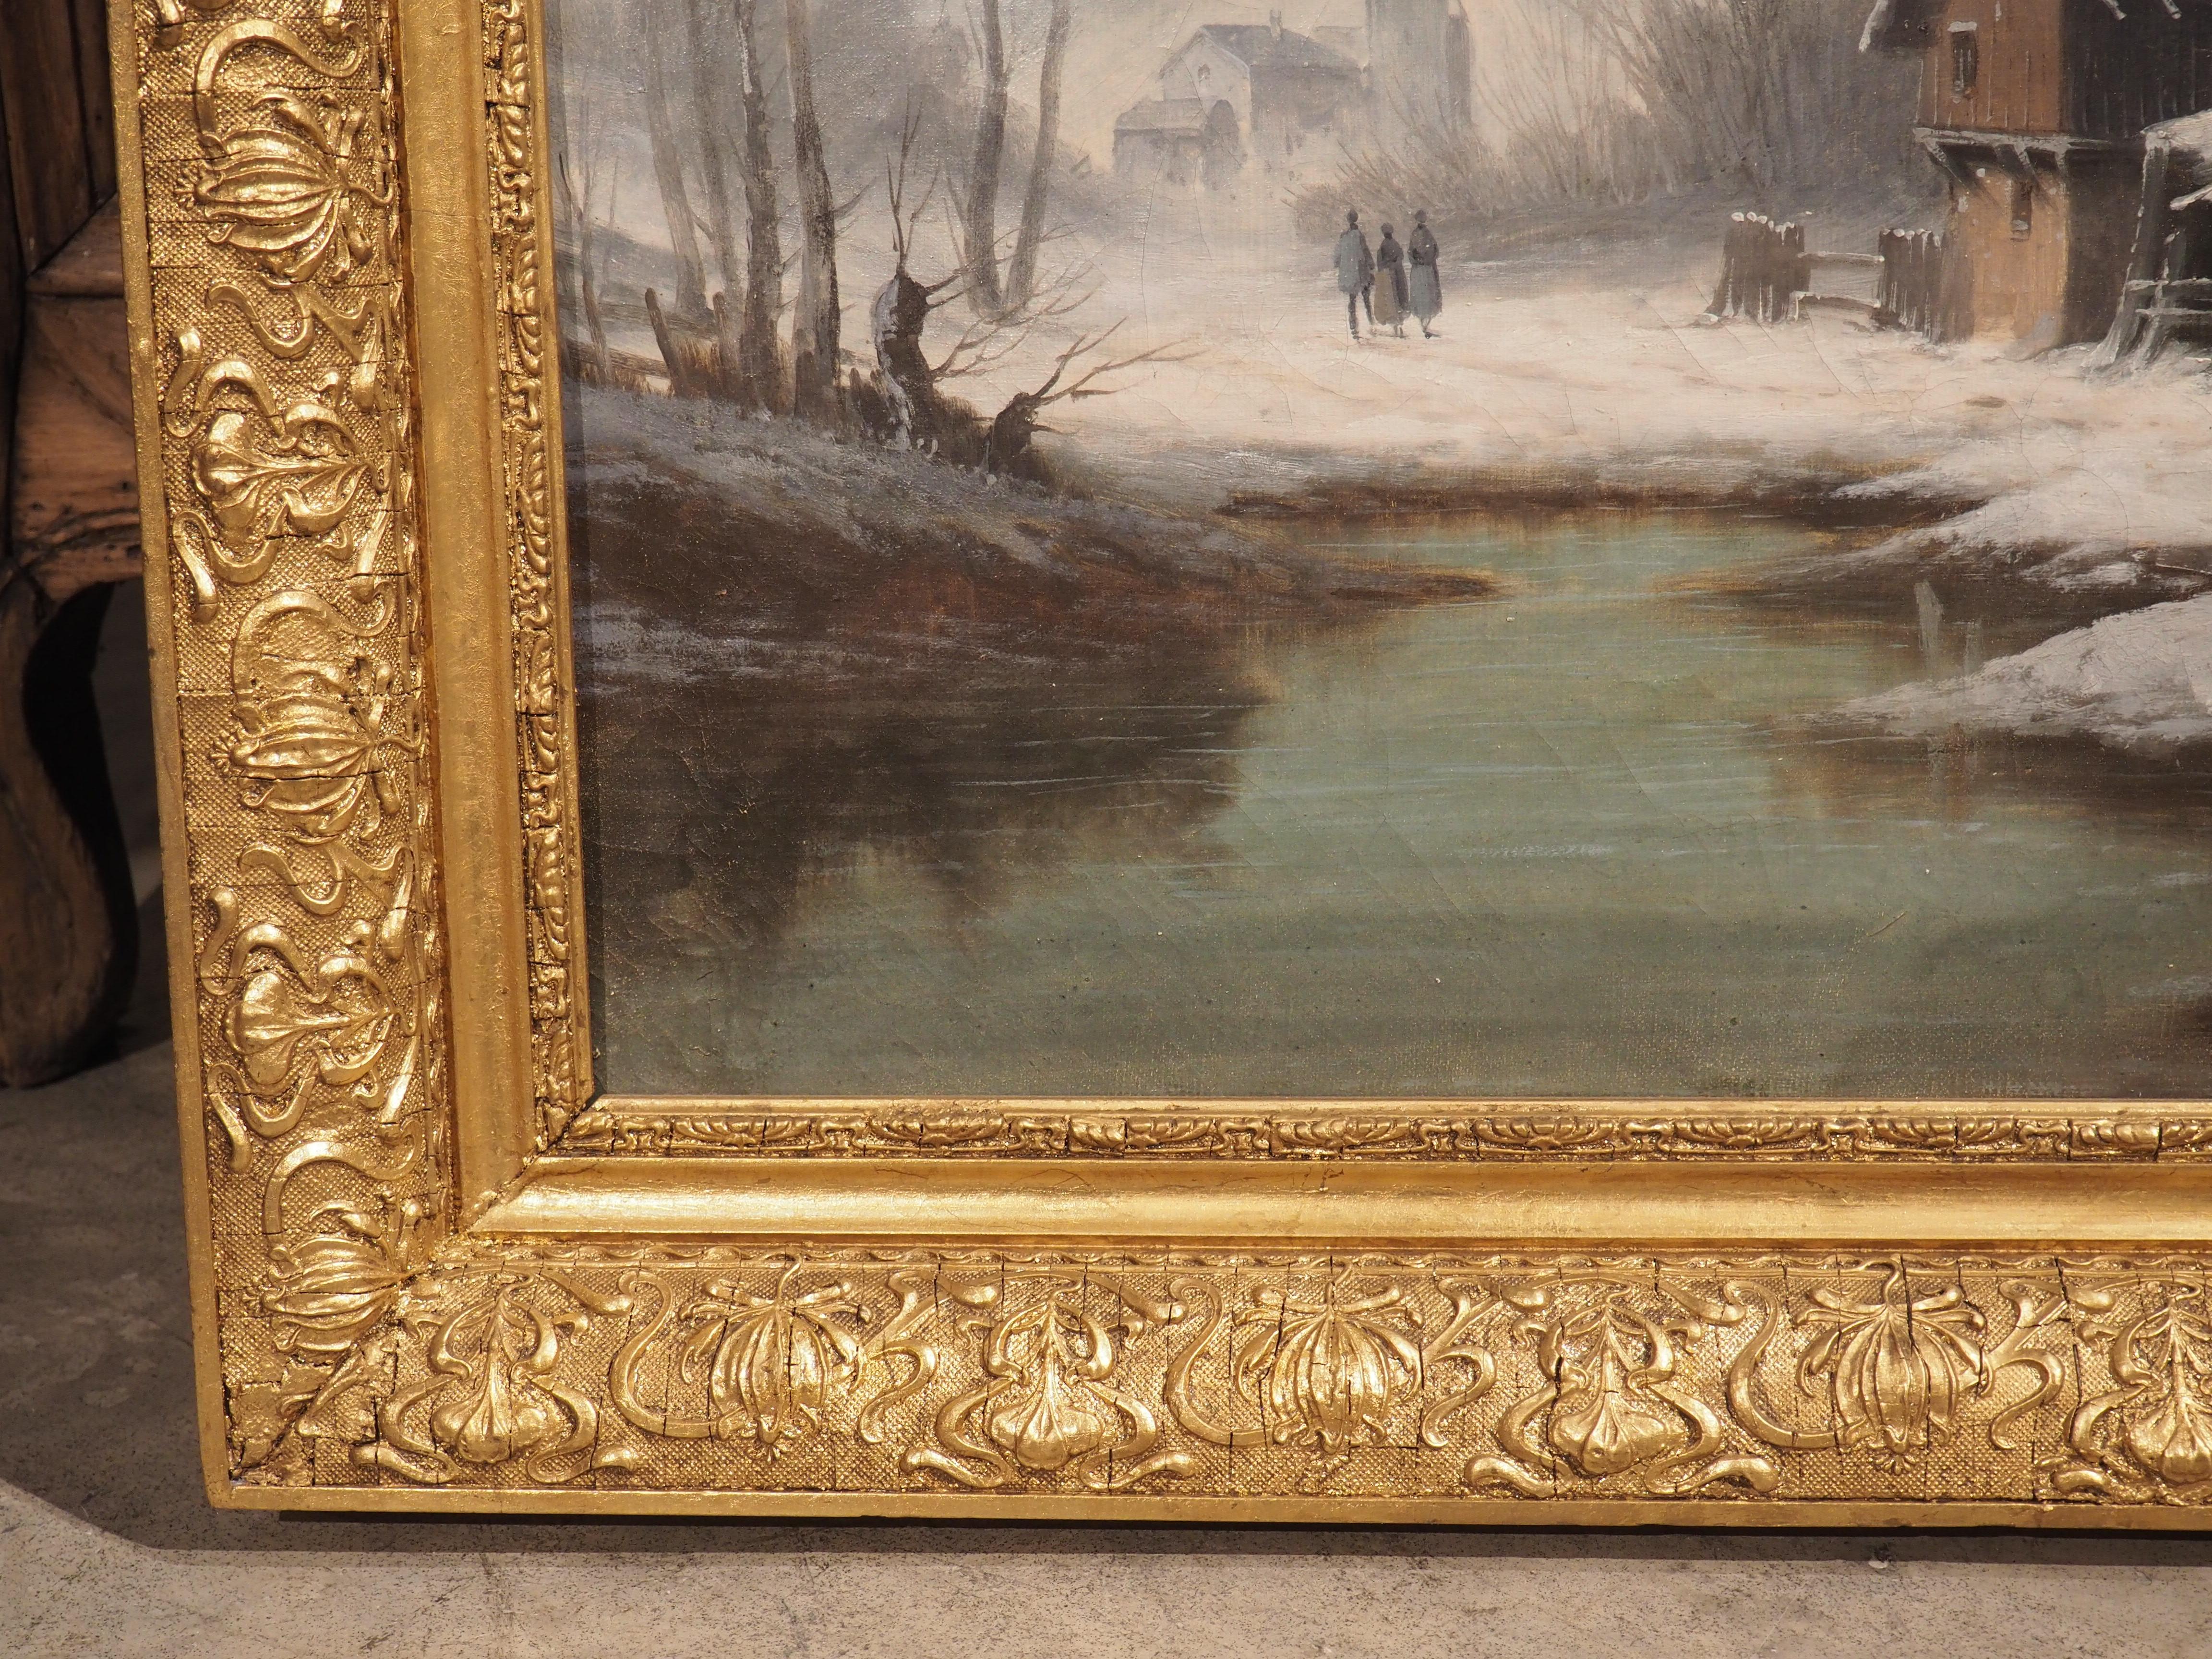 Ce paysage d'hiver français datant des années 1800 est solidement installé dans son cadre d'origine en bois doré. Le cadre sculpté à la main comporte plusieurs longs rubans, avec des boucles de tissu sinueuses englobant une bordure répétitive de